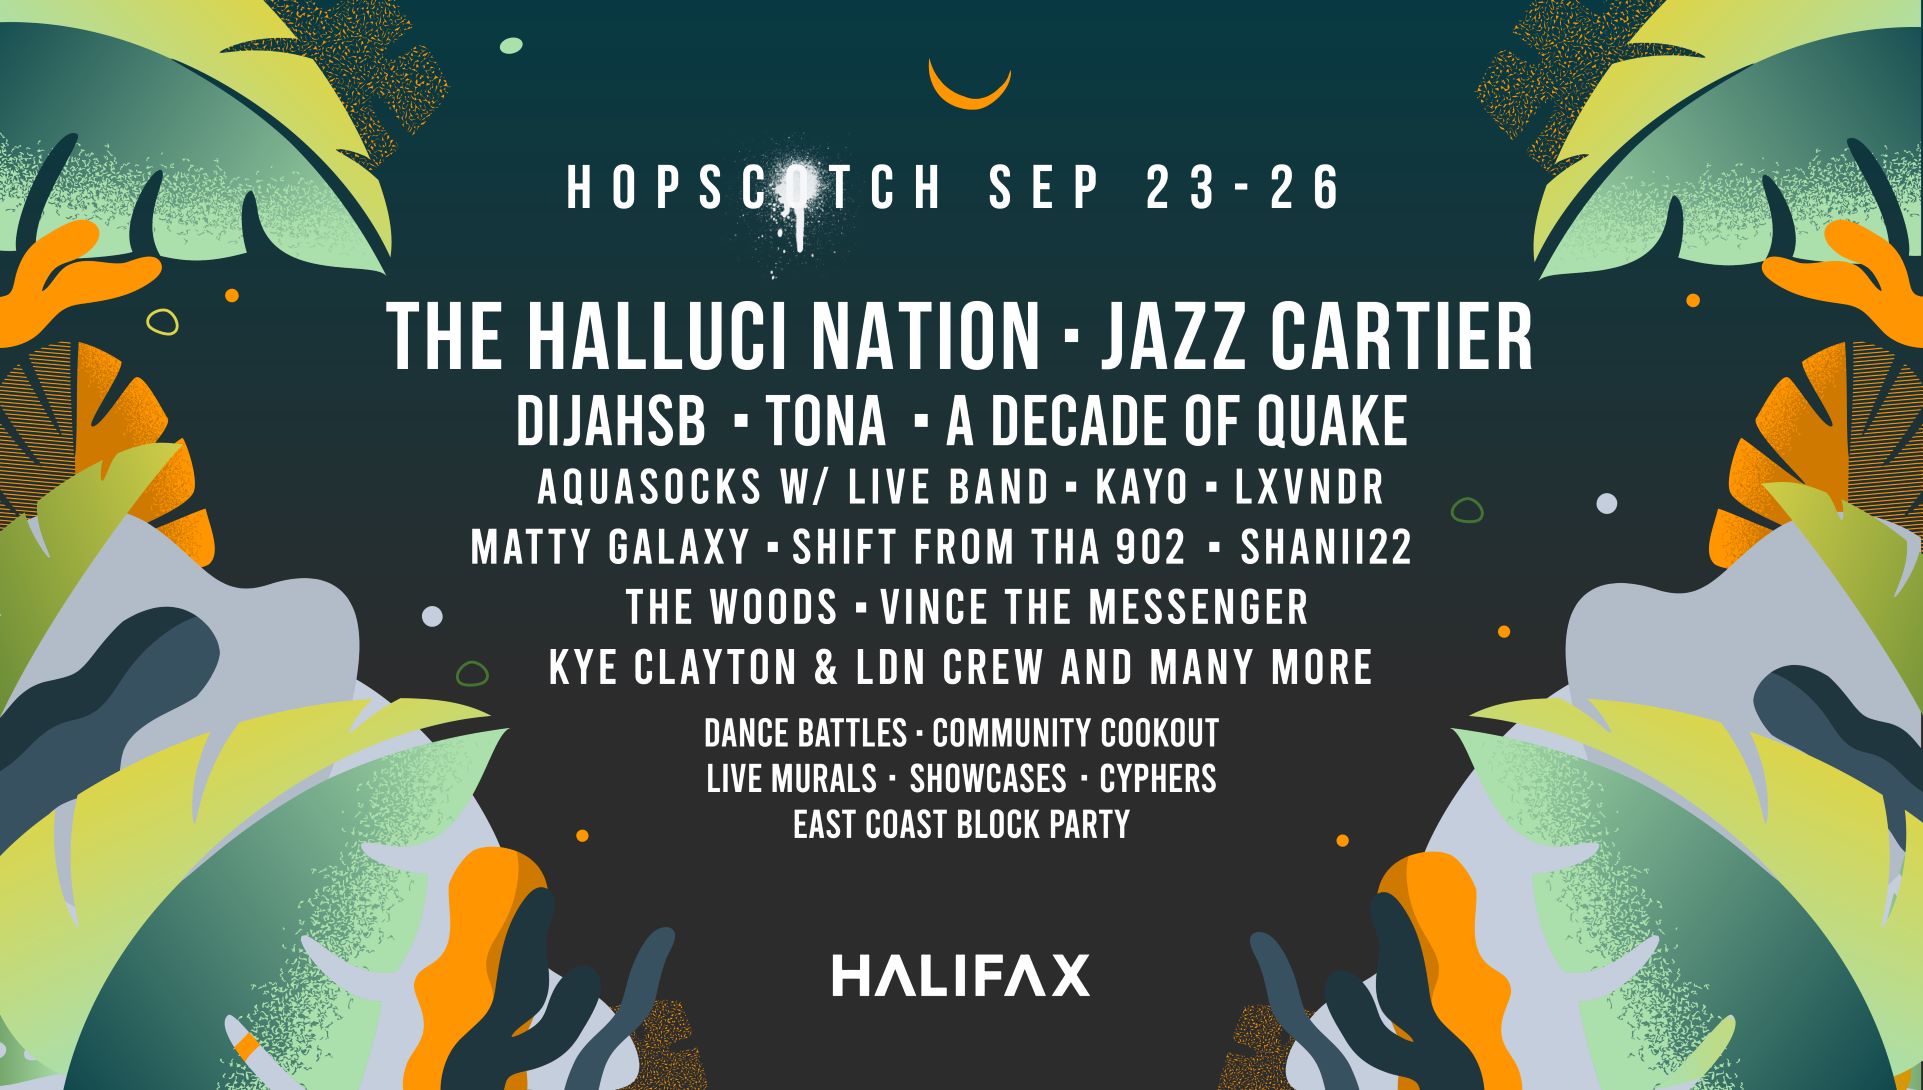  Hopscotch returns Sept 23-26, 2021